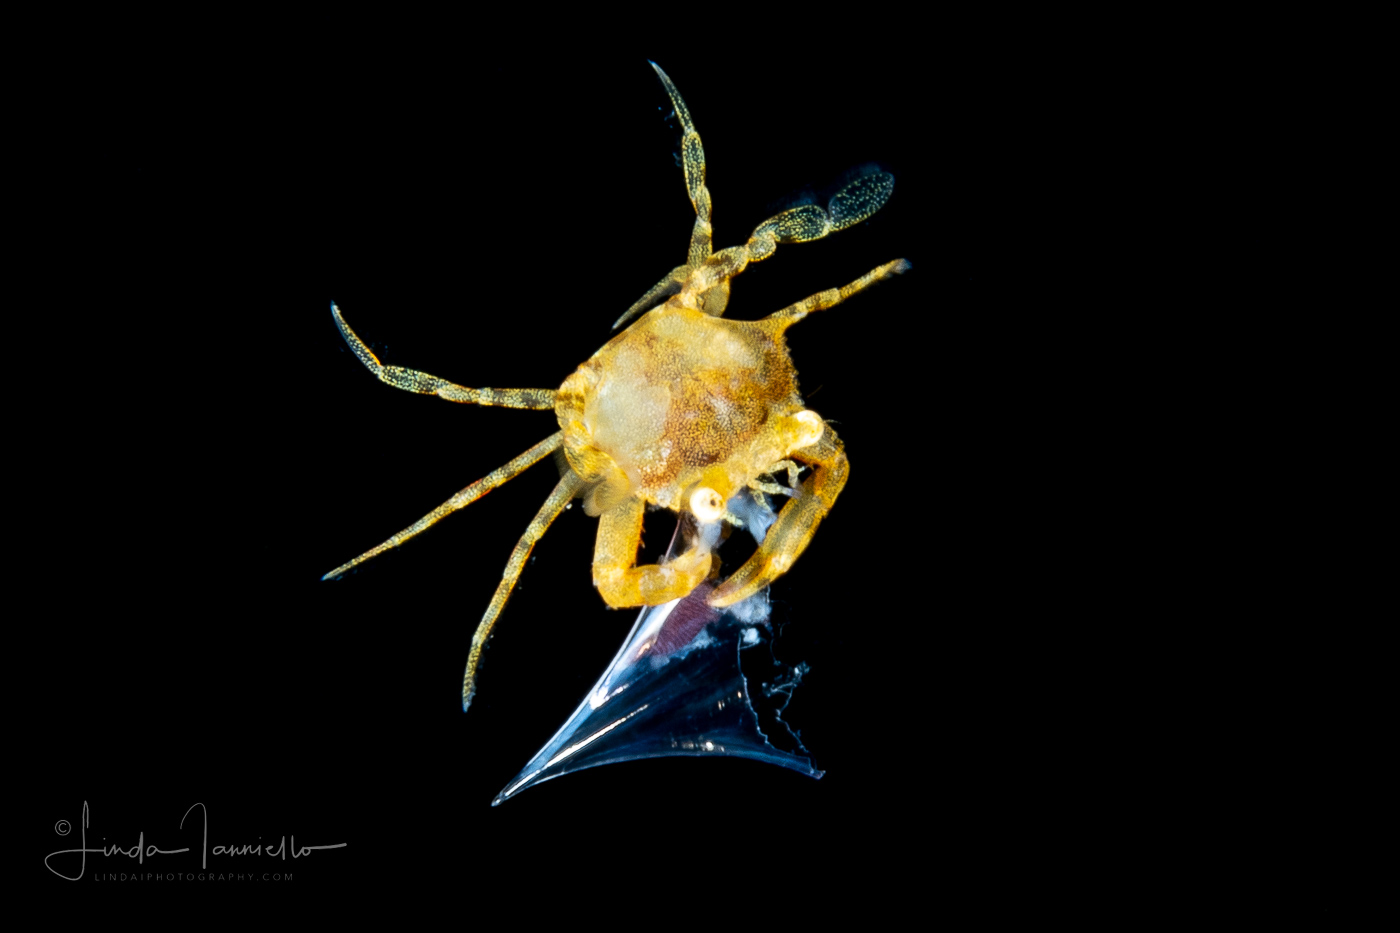 Sargassum Swimming Crab - Portunidae Family - Portunus sayi - preying on a Sea Butterfly - Pteropoda - Euthecosomata - probably Clio pyramidata